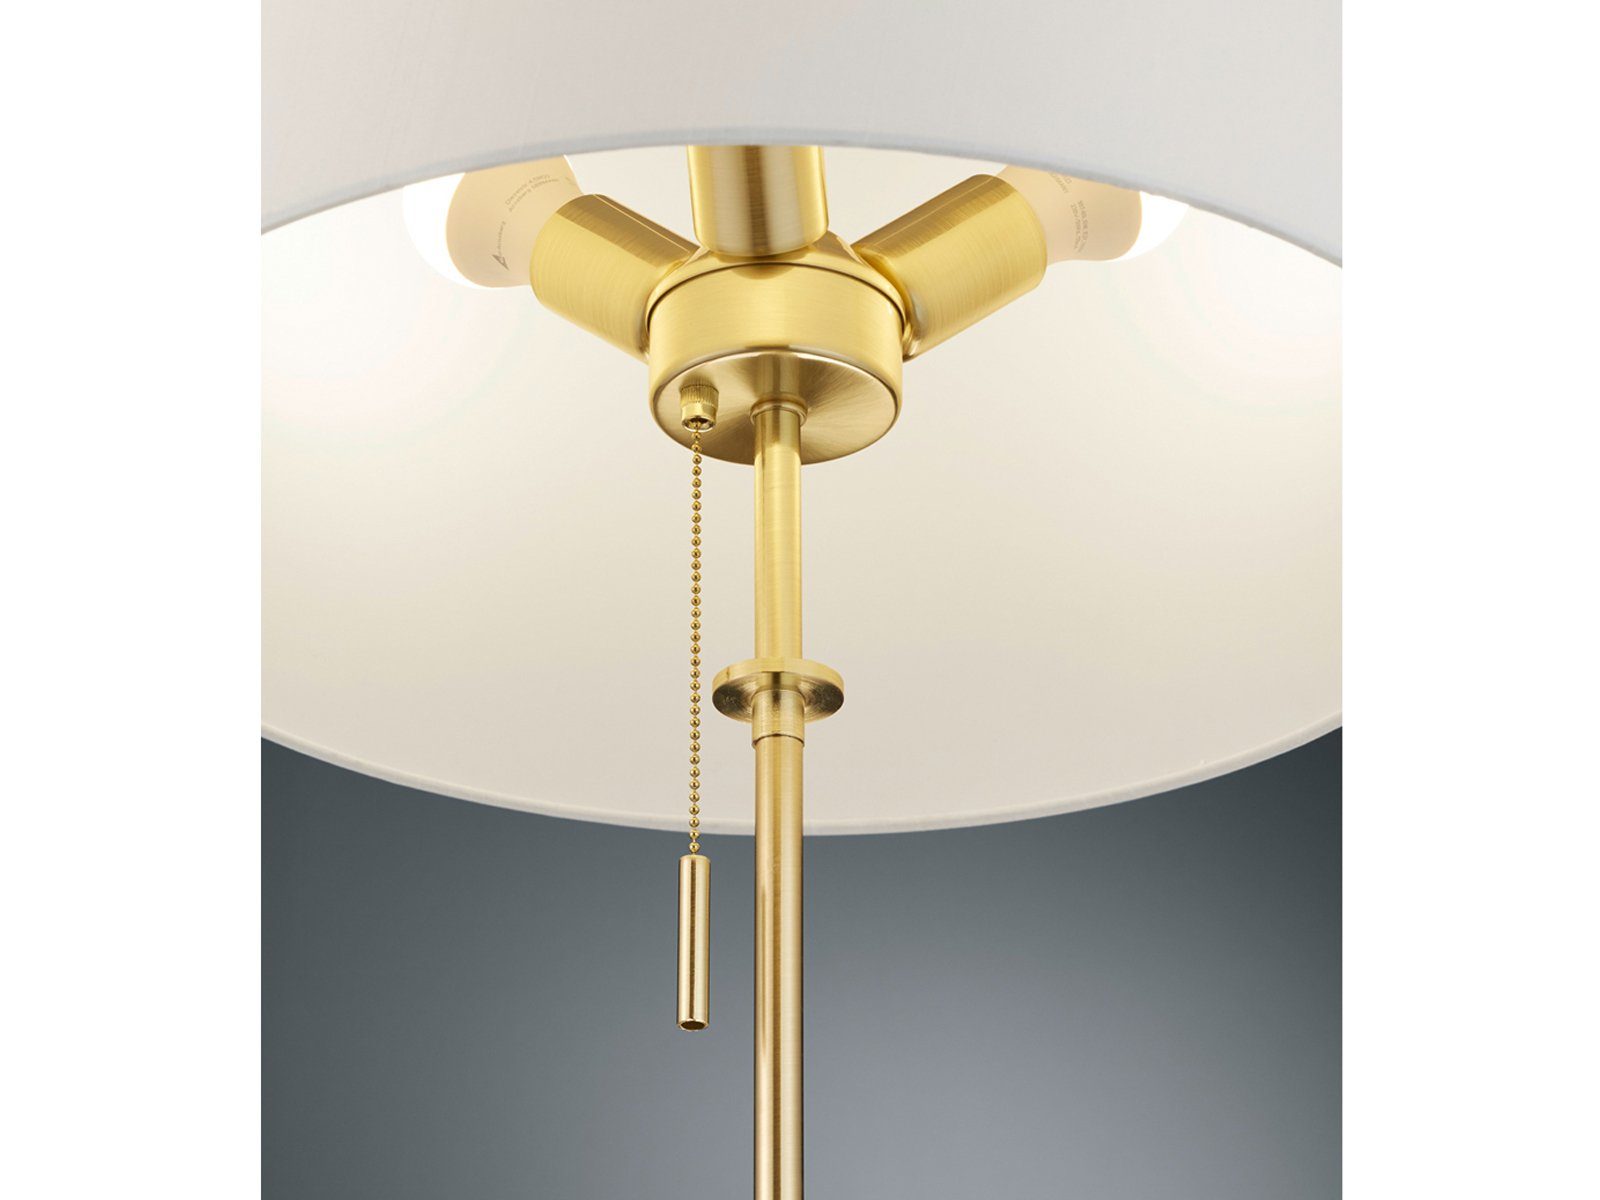 H Lampenschirm meineWunschleuchte Stoff Designklassiker Warmweiß, Messing wechselbar, golden LED Stehlampe, höhenverstellbar 138-180cm LED